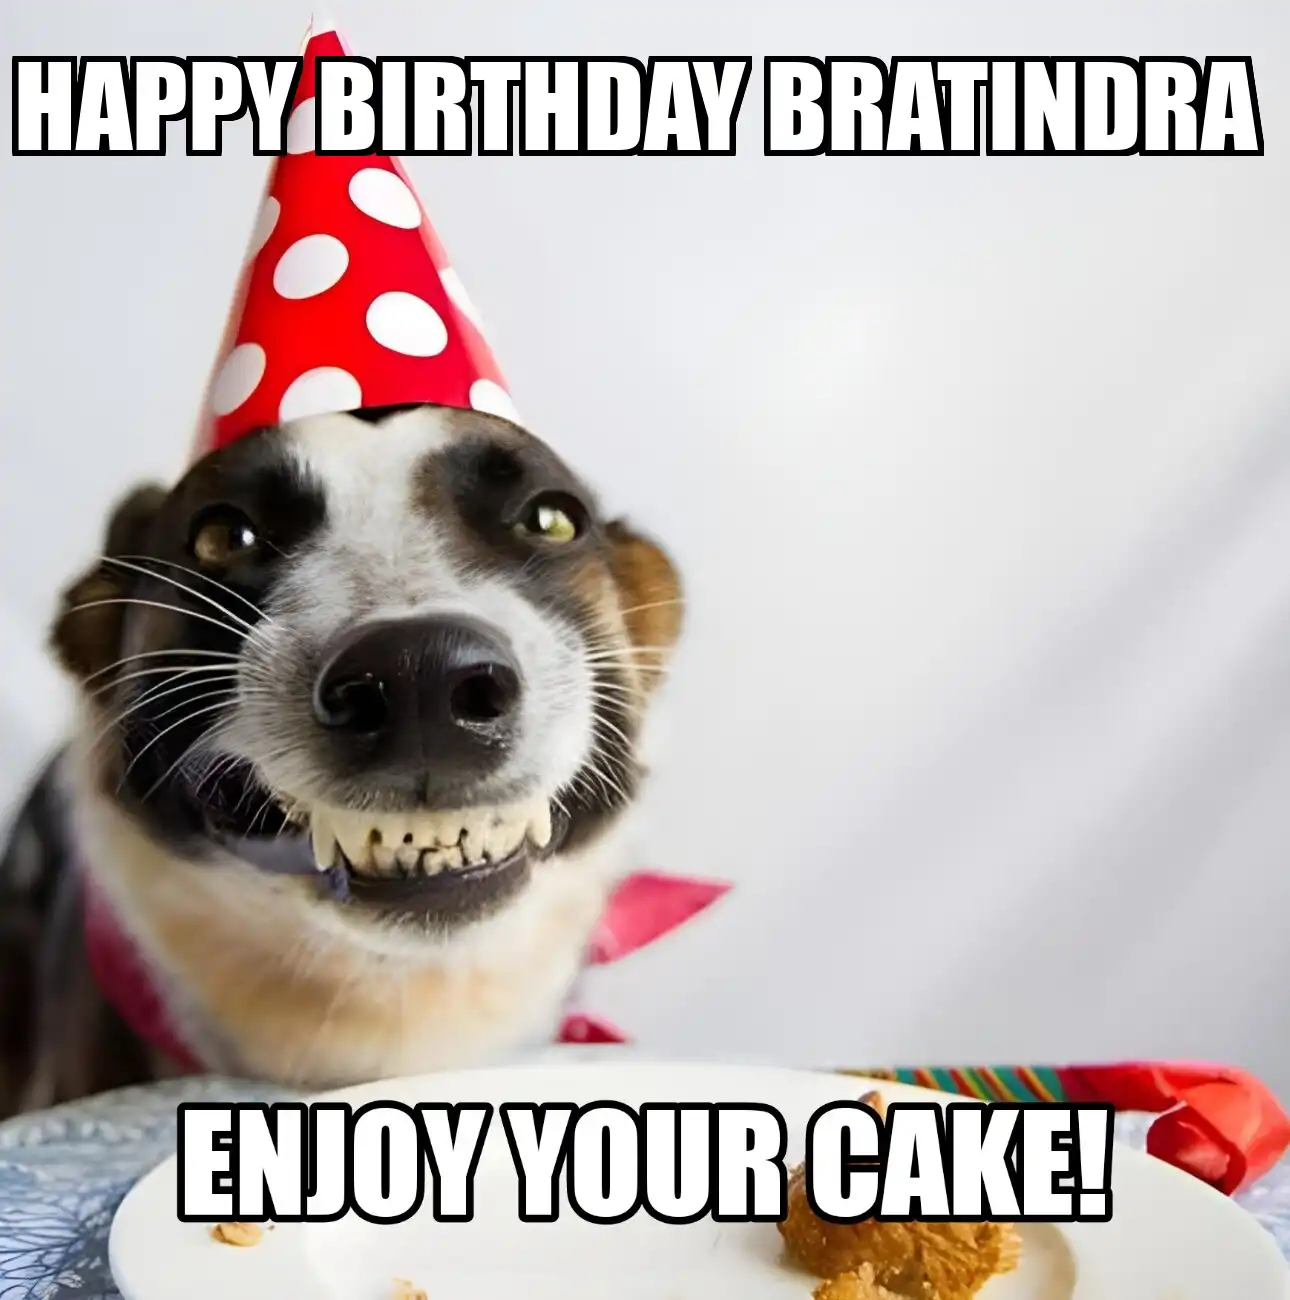 Happy Birthday Bratindra Enjoy Your Cake Dog Meme